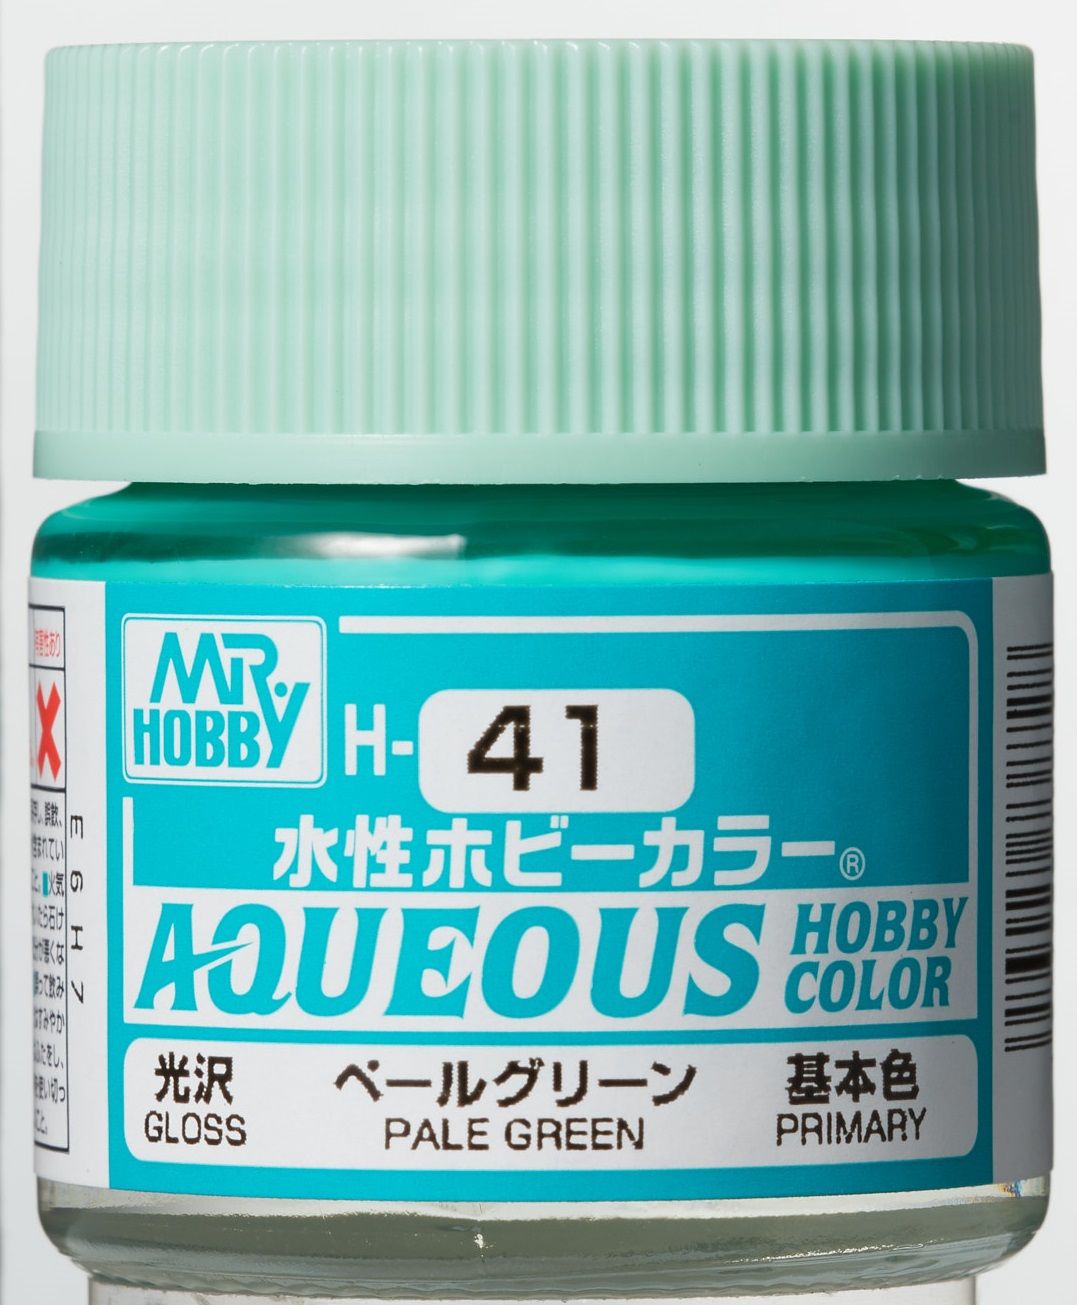 (X) Mr Hobby - Gunze H-041 - Aqueous Hobby Colors (10 ml) Pale Green